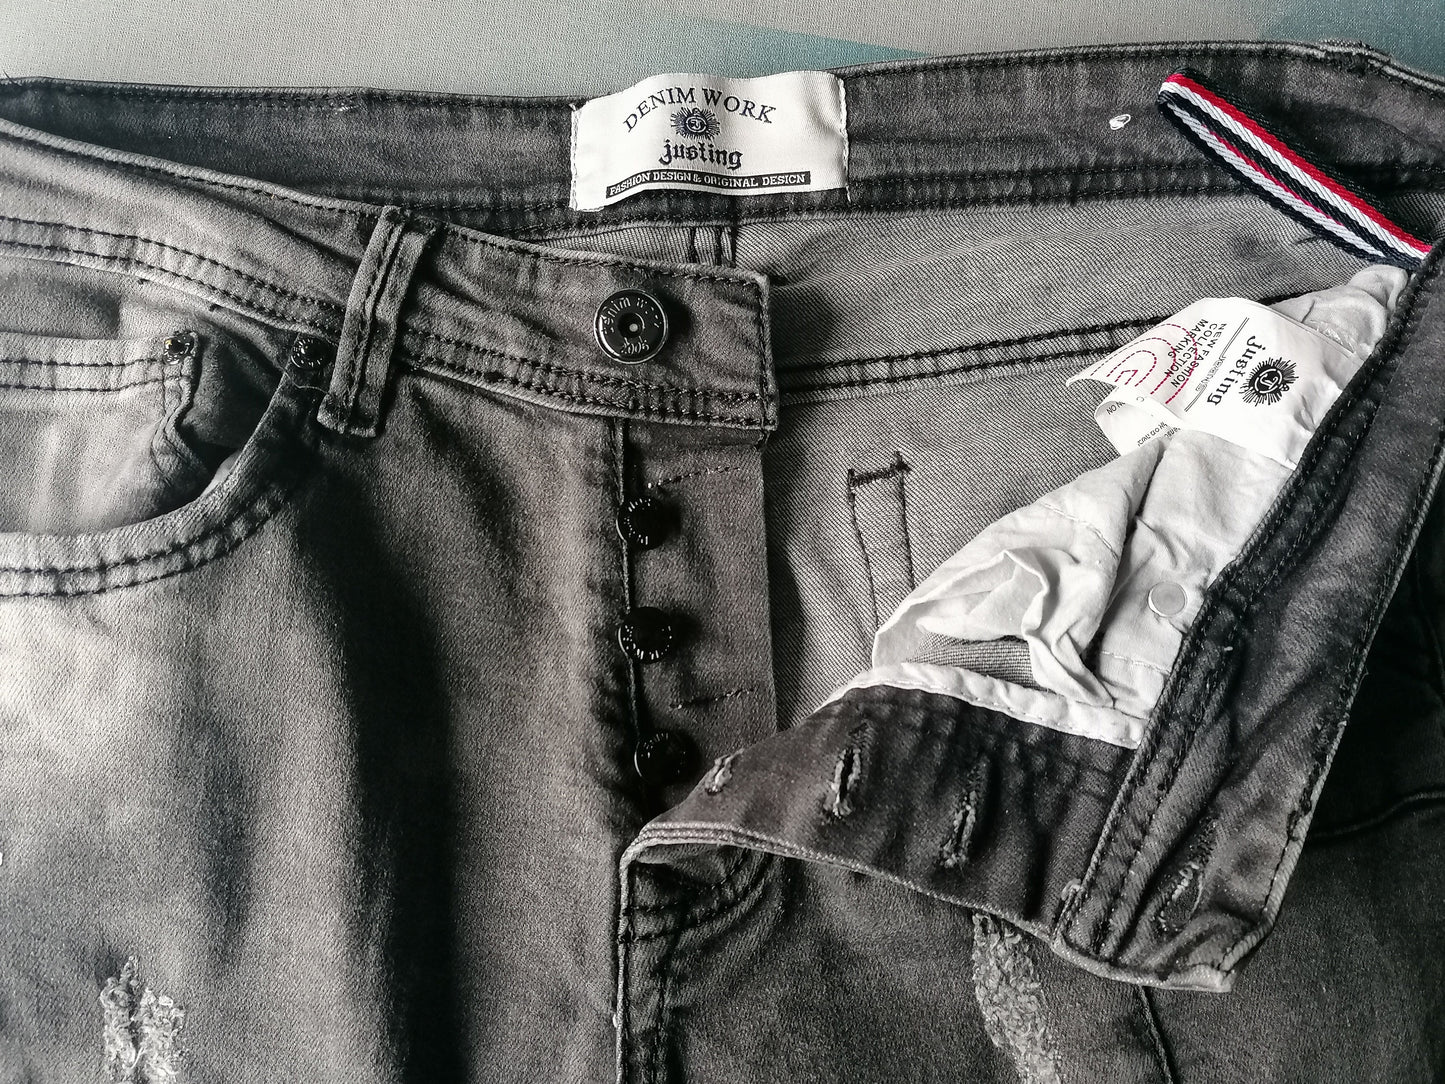 Chiare i jeans. Nero colorato. Taglia W34 - L32. stirata